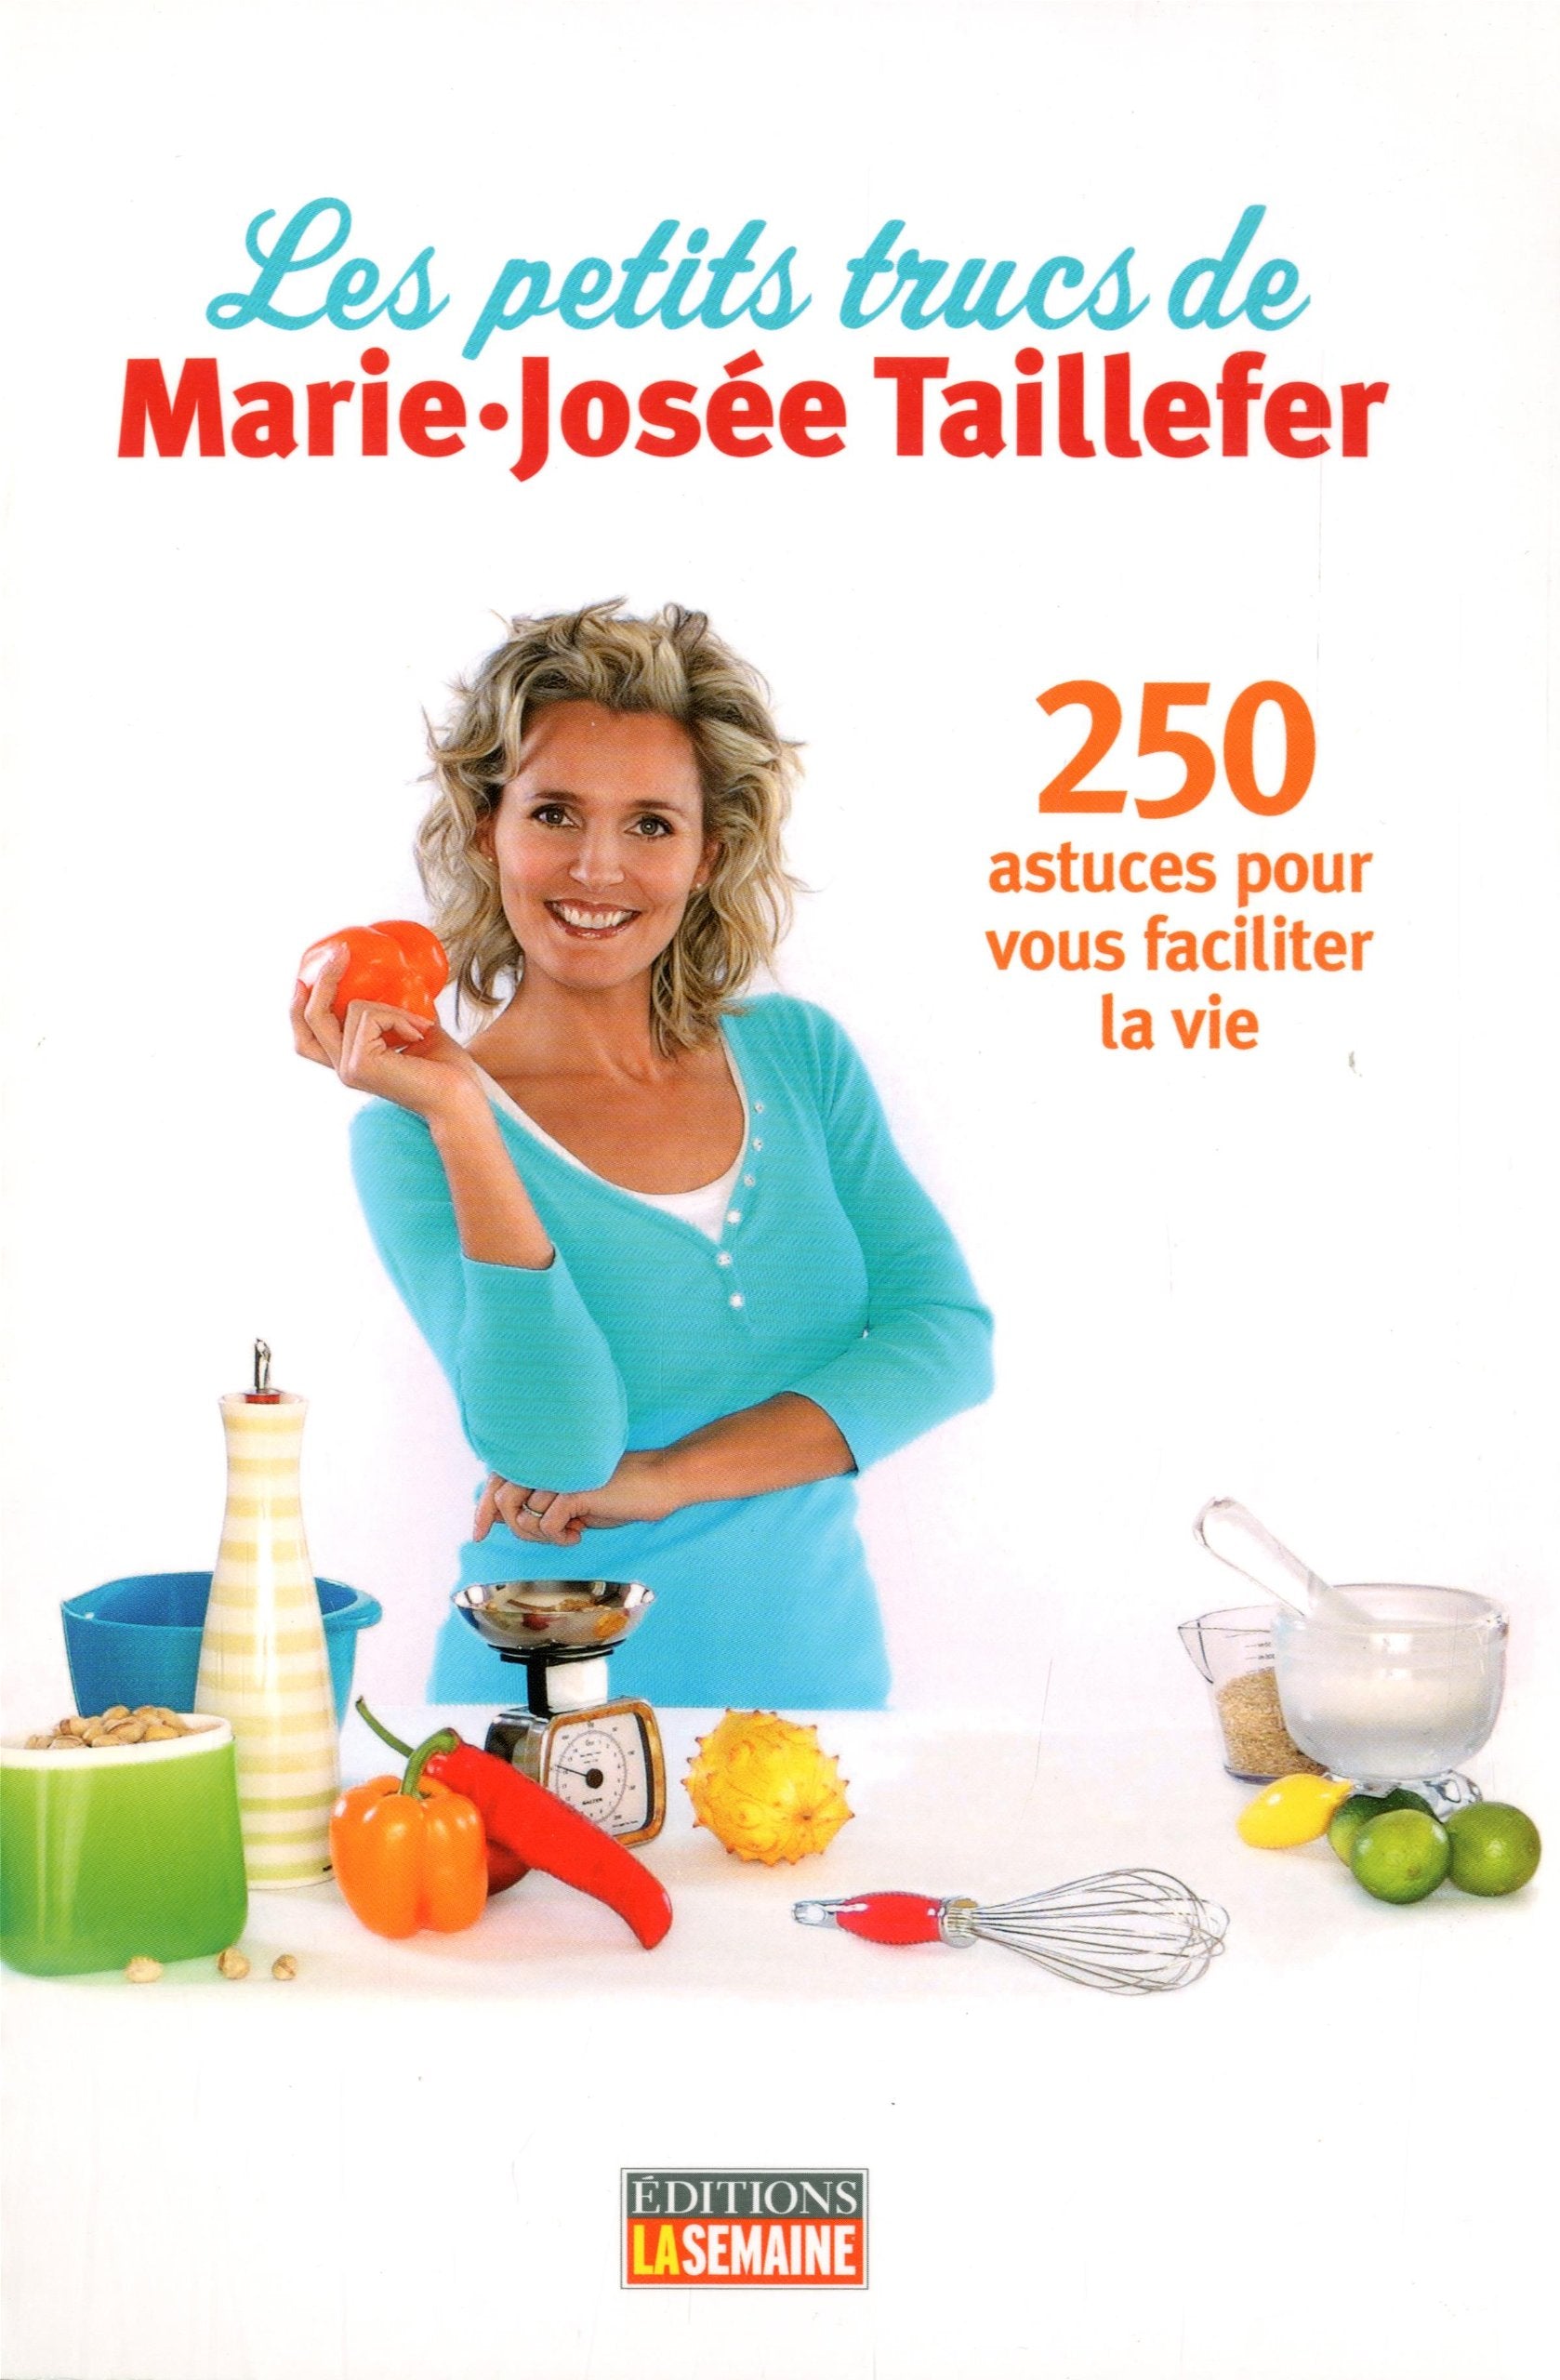 Les petits trucs de Marie-Josée Taillefer: 250 astuces pour vous faciliter la vie - Marie-Josée Taillefer